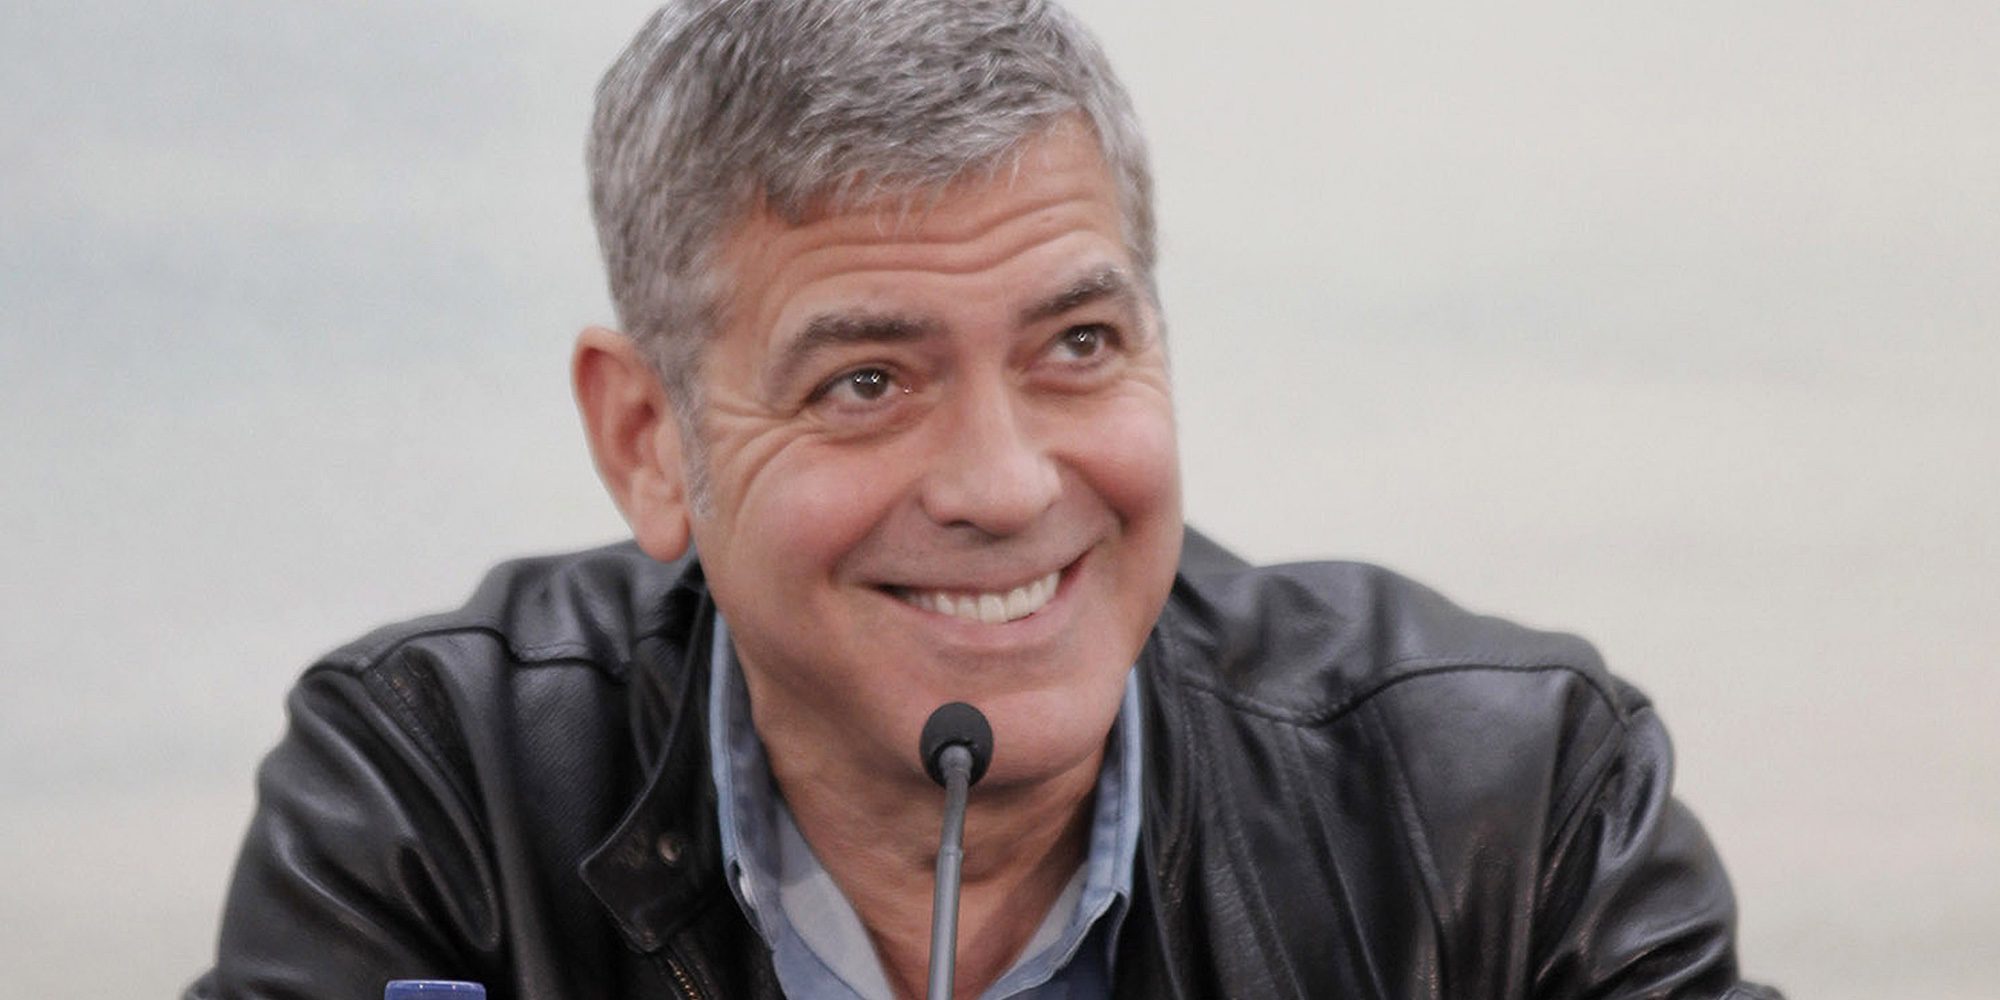 George Clooney habla por primera vez sobre su paternidad: "Estamos muy emocionados y va a ser una aventura"